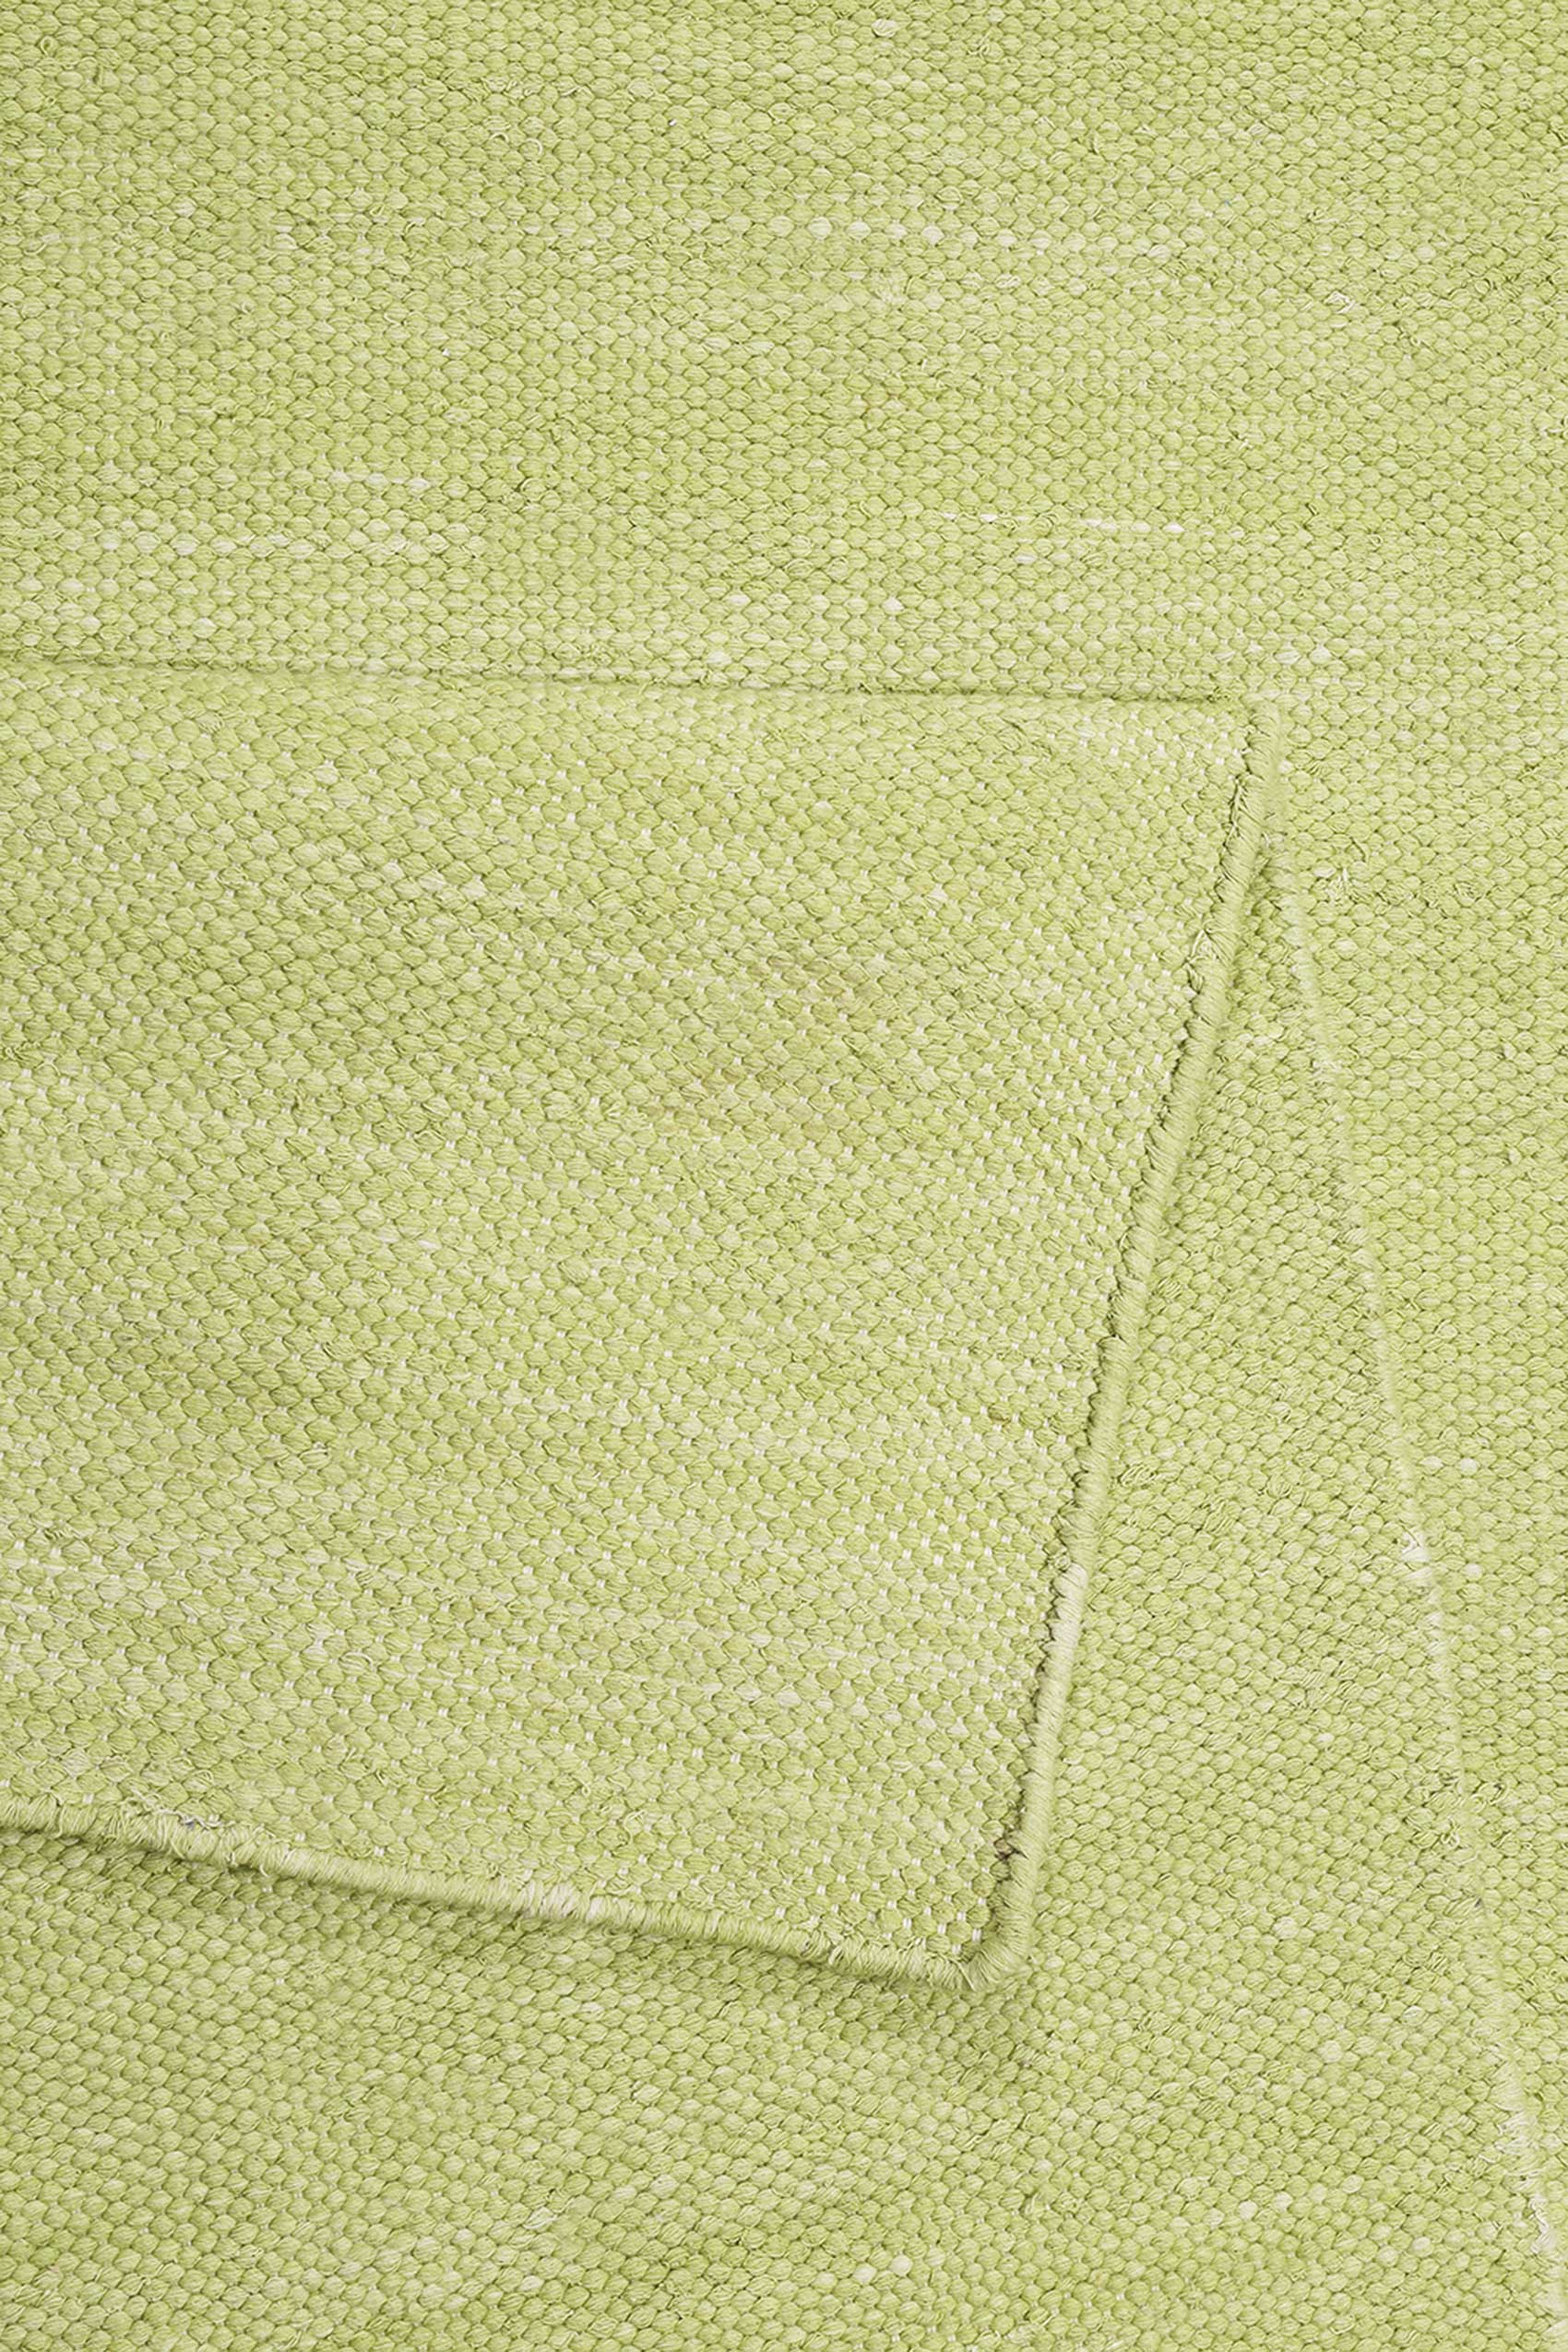 Kurzflor – » Kelim Teppiche Grün aus Esprit Rainbow Outlet- « Baumwolle Teppich